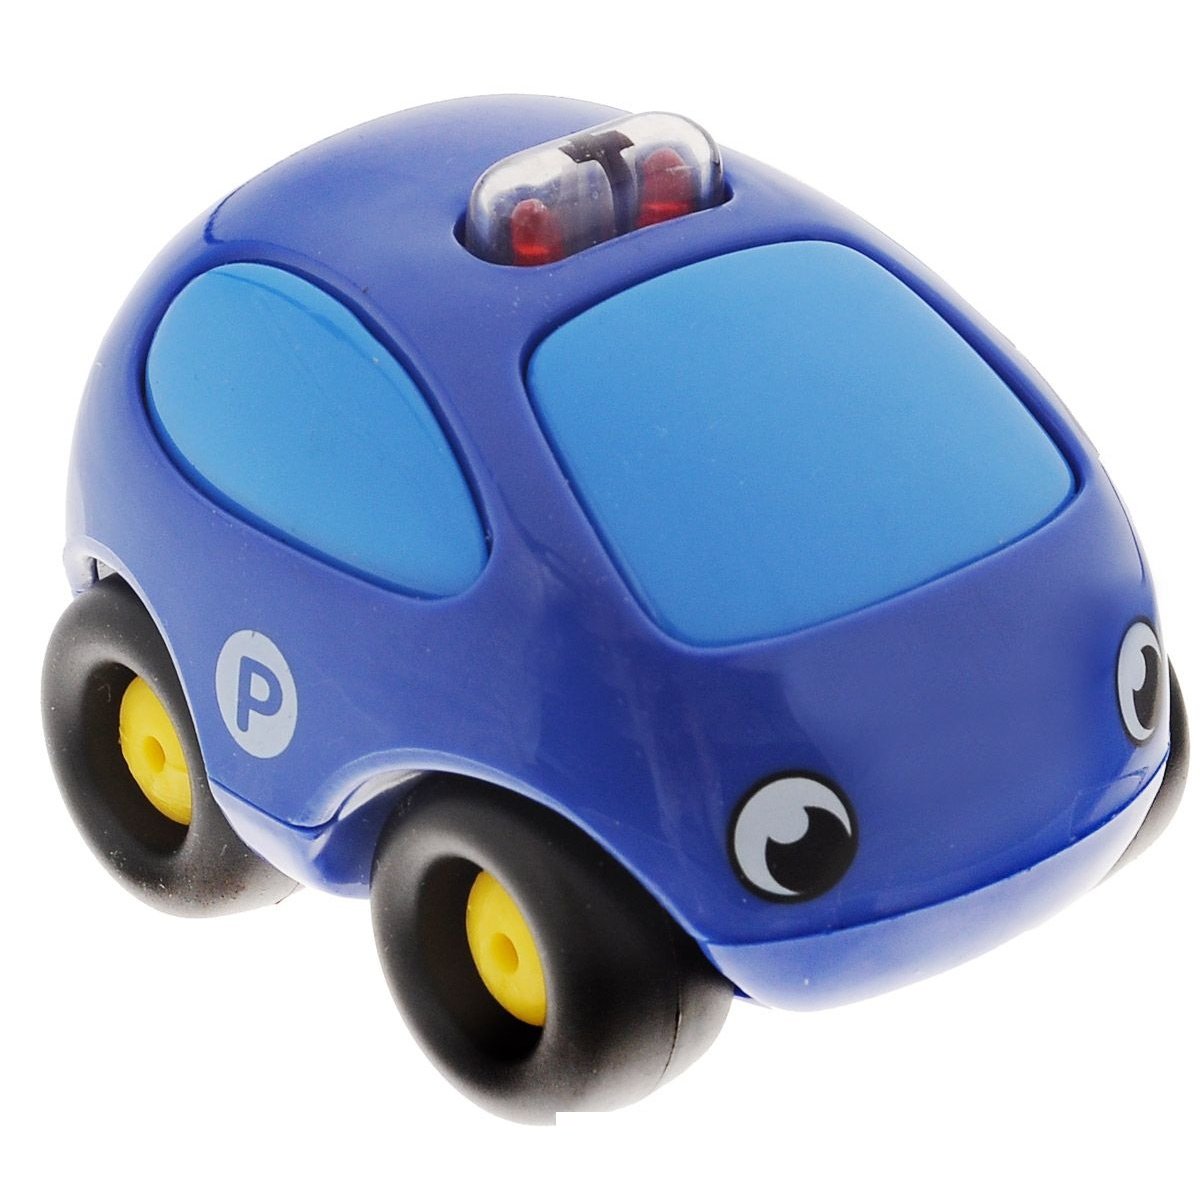 Картинки машин для мальчиков. Машинки Smoby Vroom Planet. Vroom Planet мини-машинки. Машинка синяя. Игрушки в машину для детей.